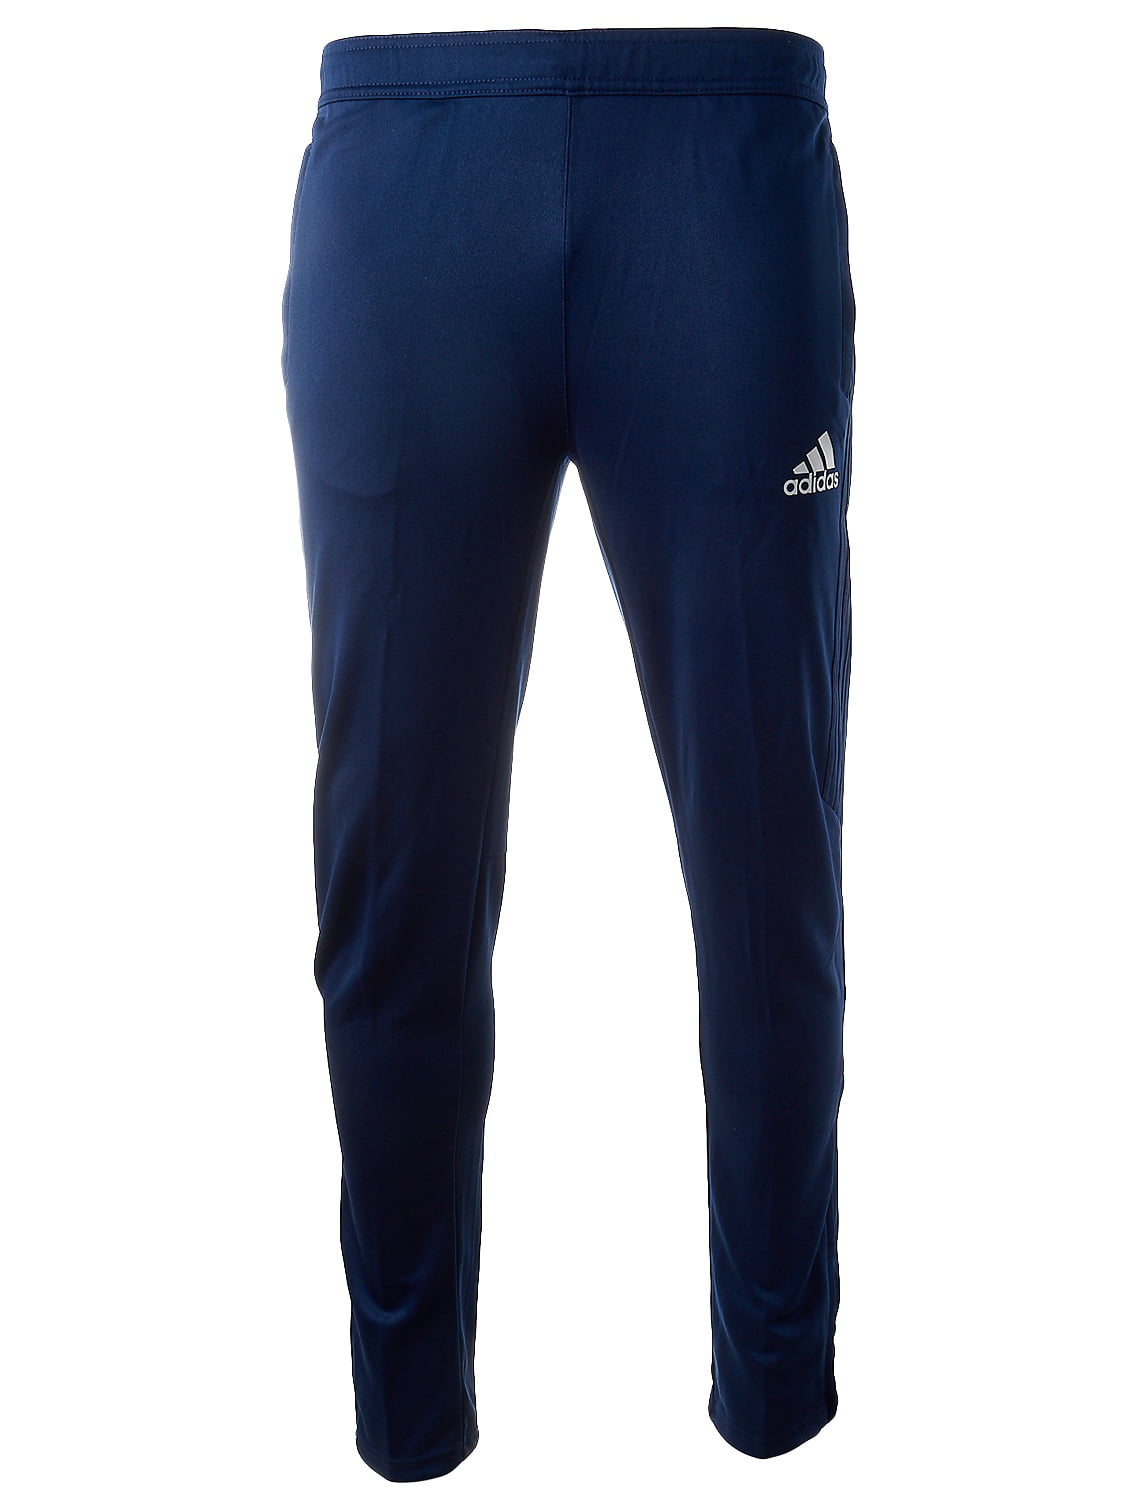 Adidas 17 Training Pants - Dark Blue/White Boys M - Walmart.com